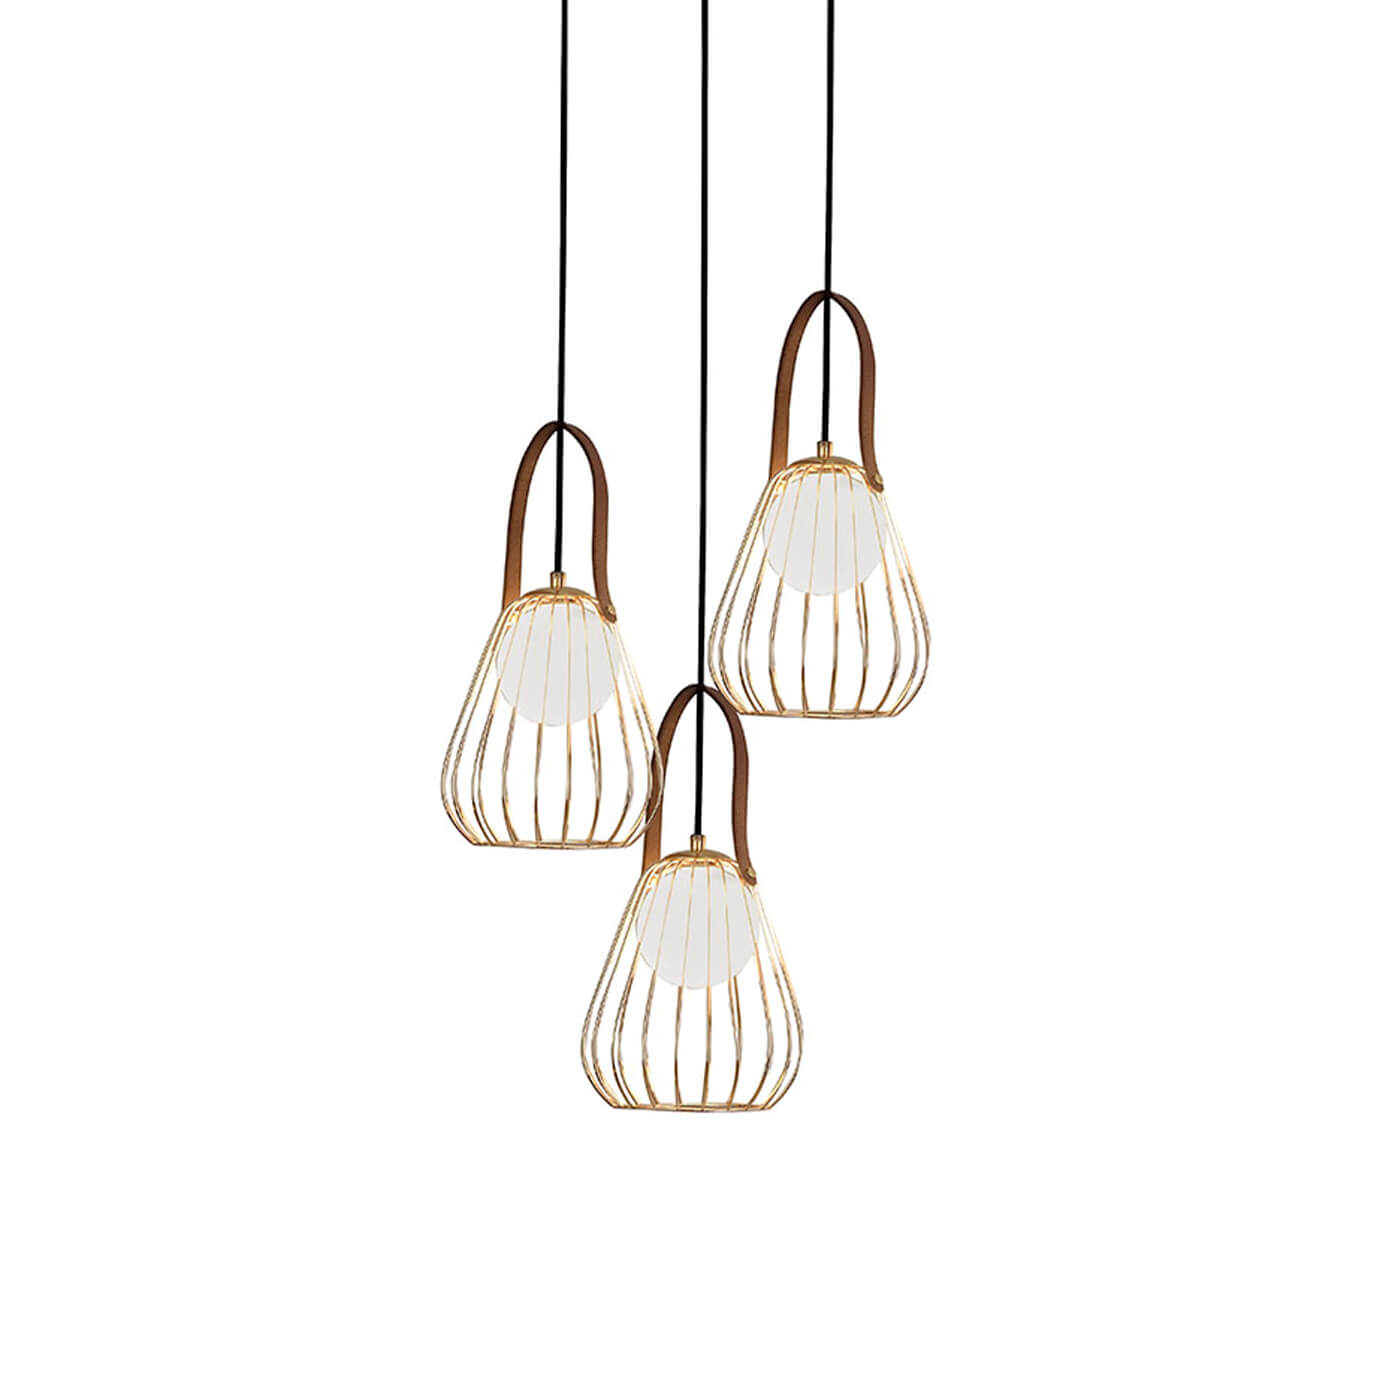 Cauti o lampa suspendata aurie LEVIK S3 din metal cu globuri de sticla, design modern, elegant, pentru living, dining sau dormitor din colectia de lustre si candelabre Domicilio?